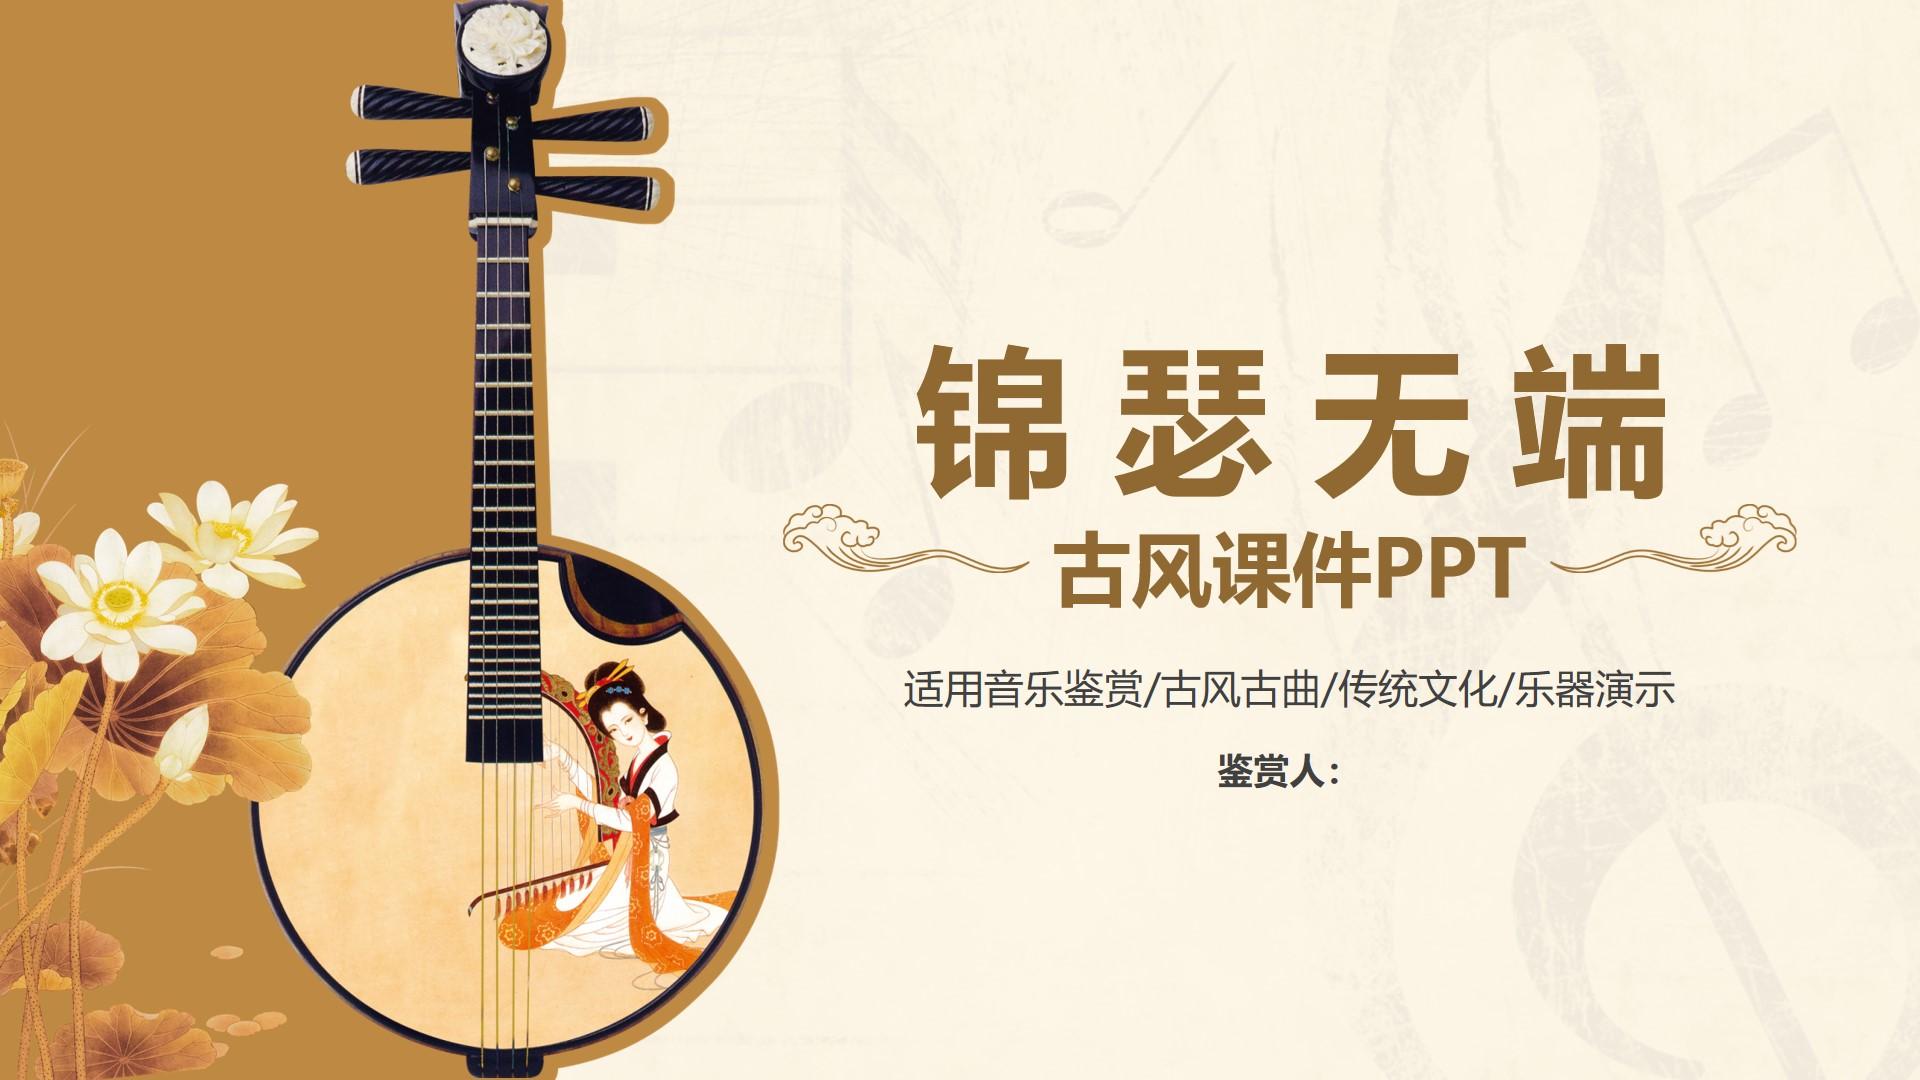 教育教学橙色黑色白色标准中国风古风 文化 乐器 鉴赏 课件云素材PPT模板1672491708013